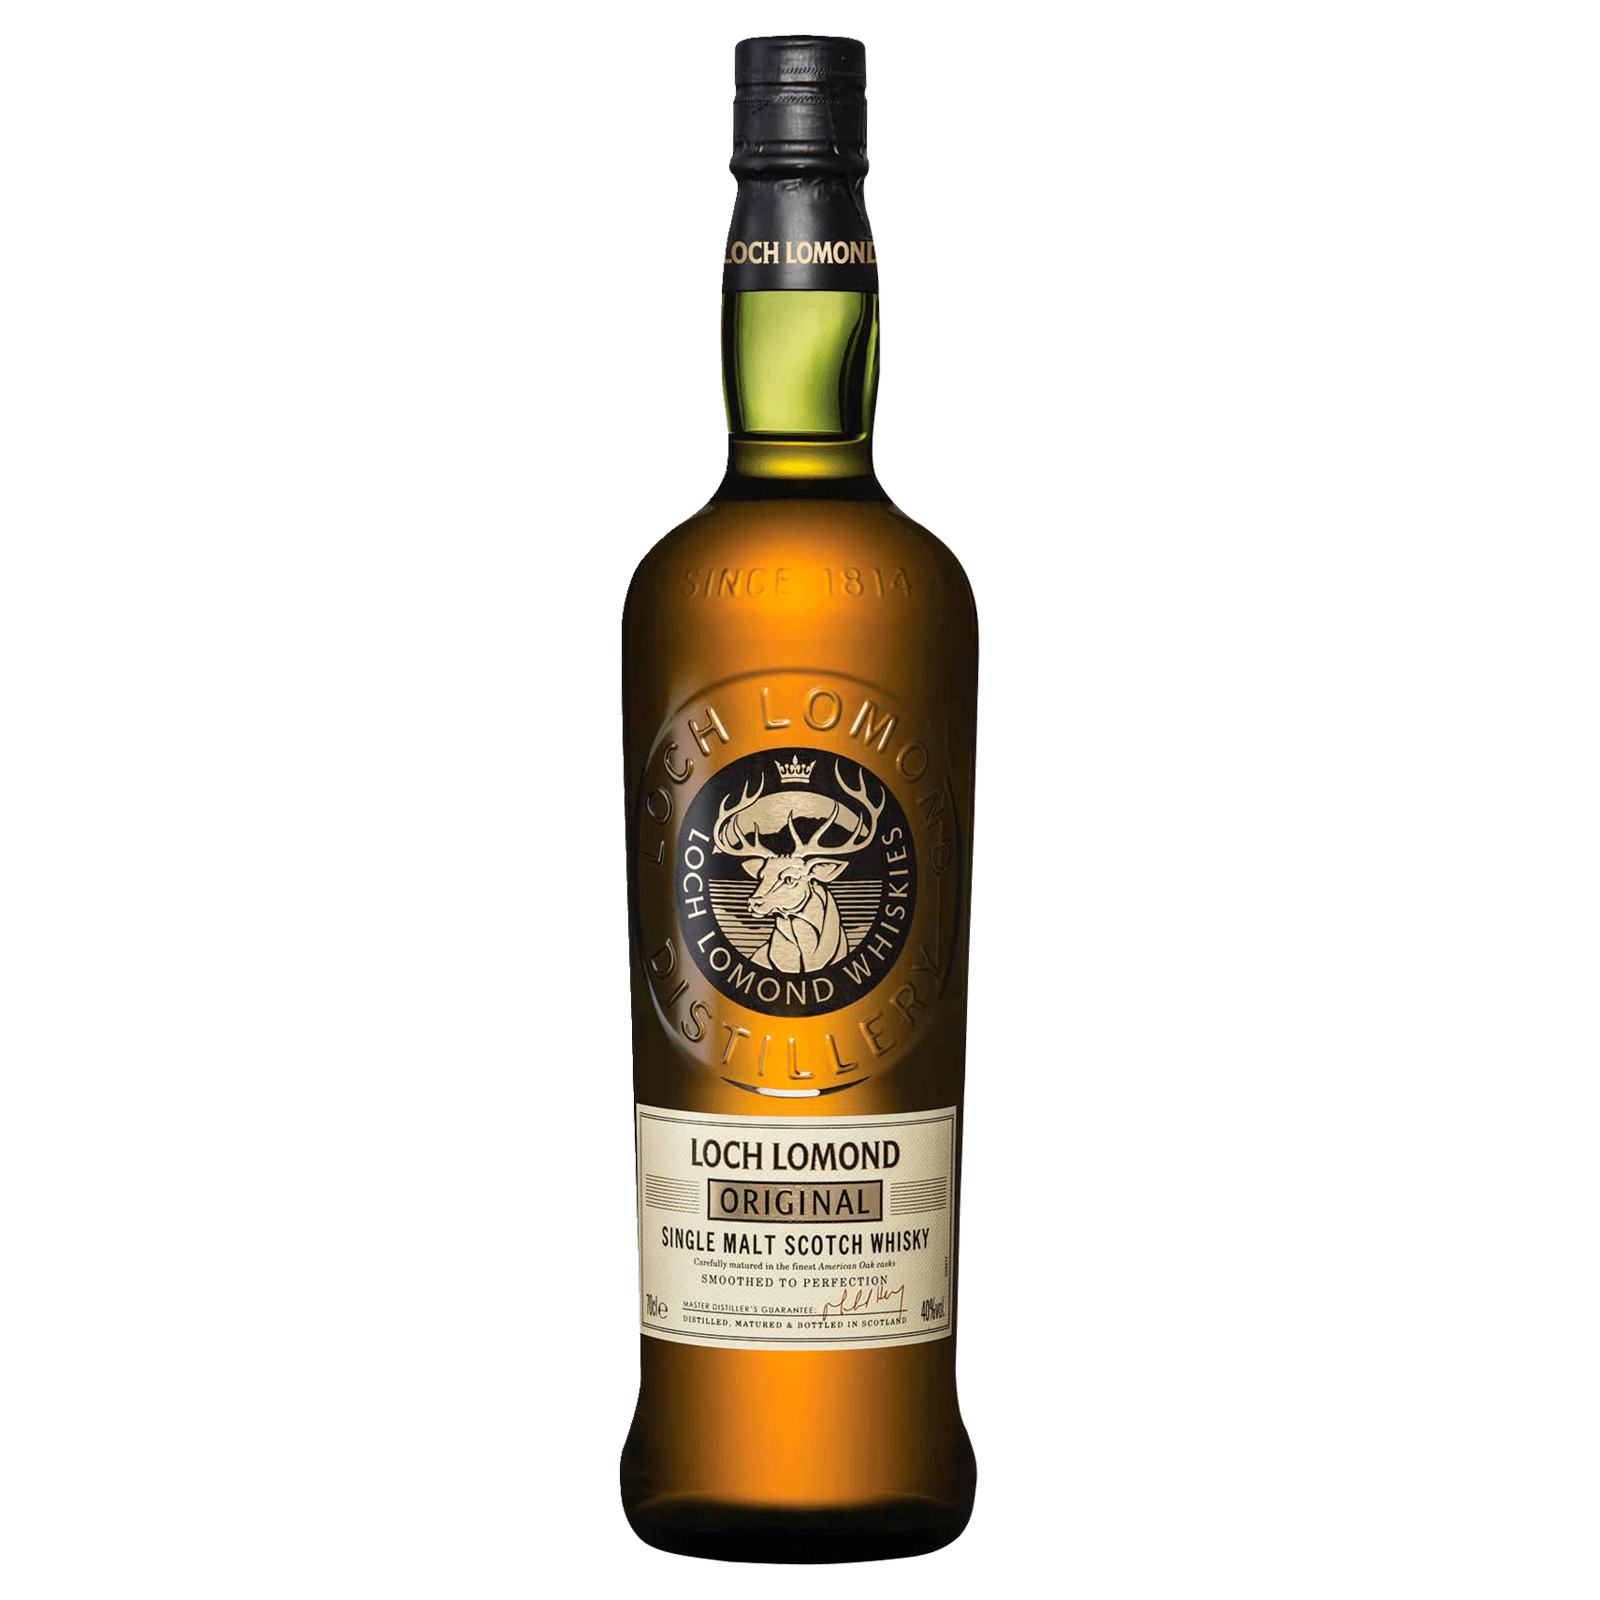 Loch Lomond Original Single Malt REWE Whisky bei Scotch 0,7l online bestellen